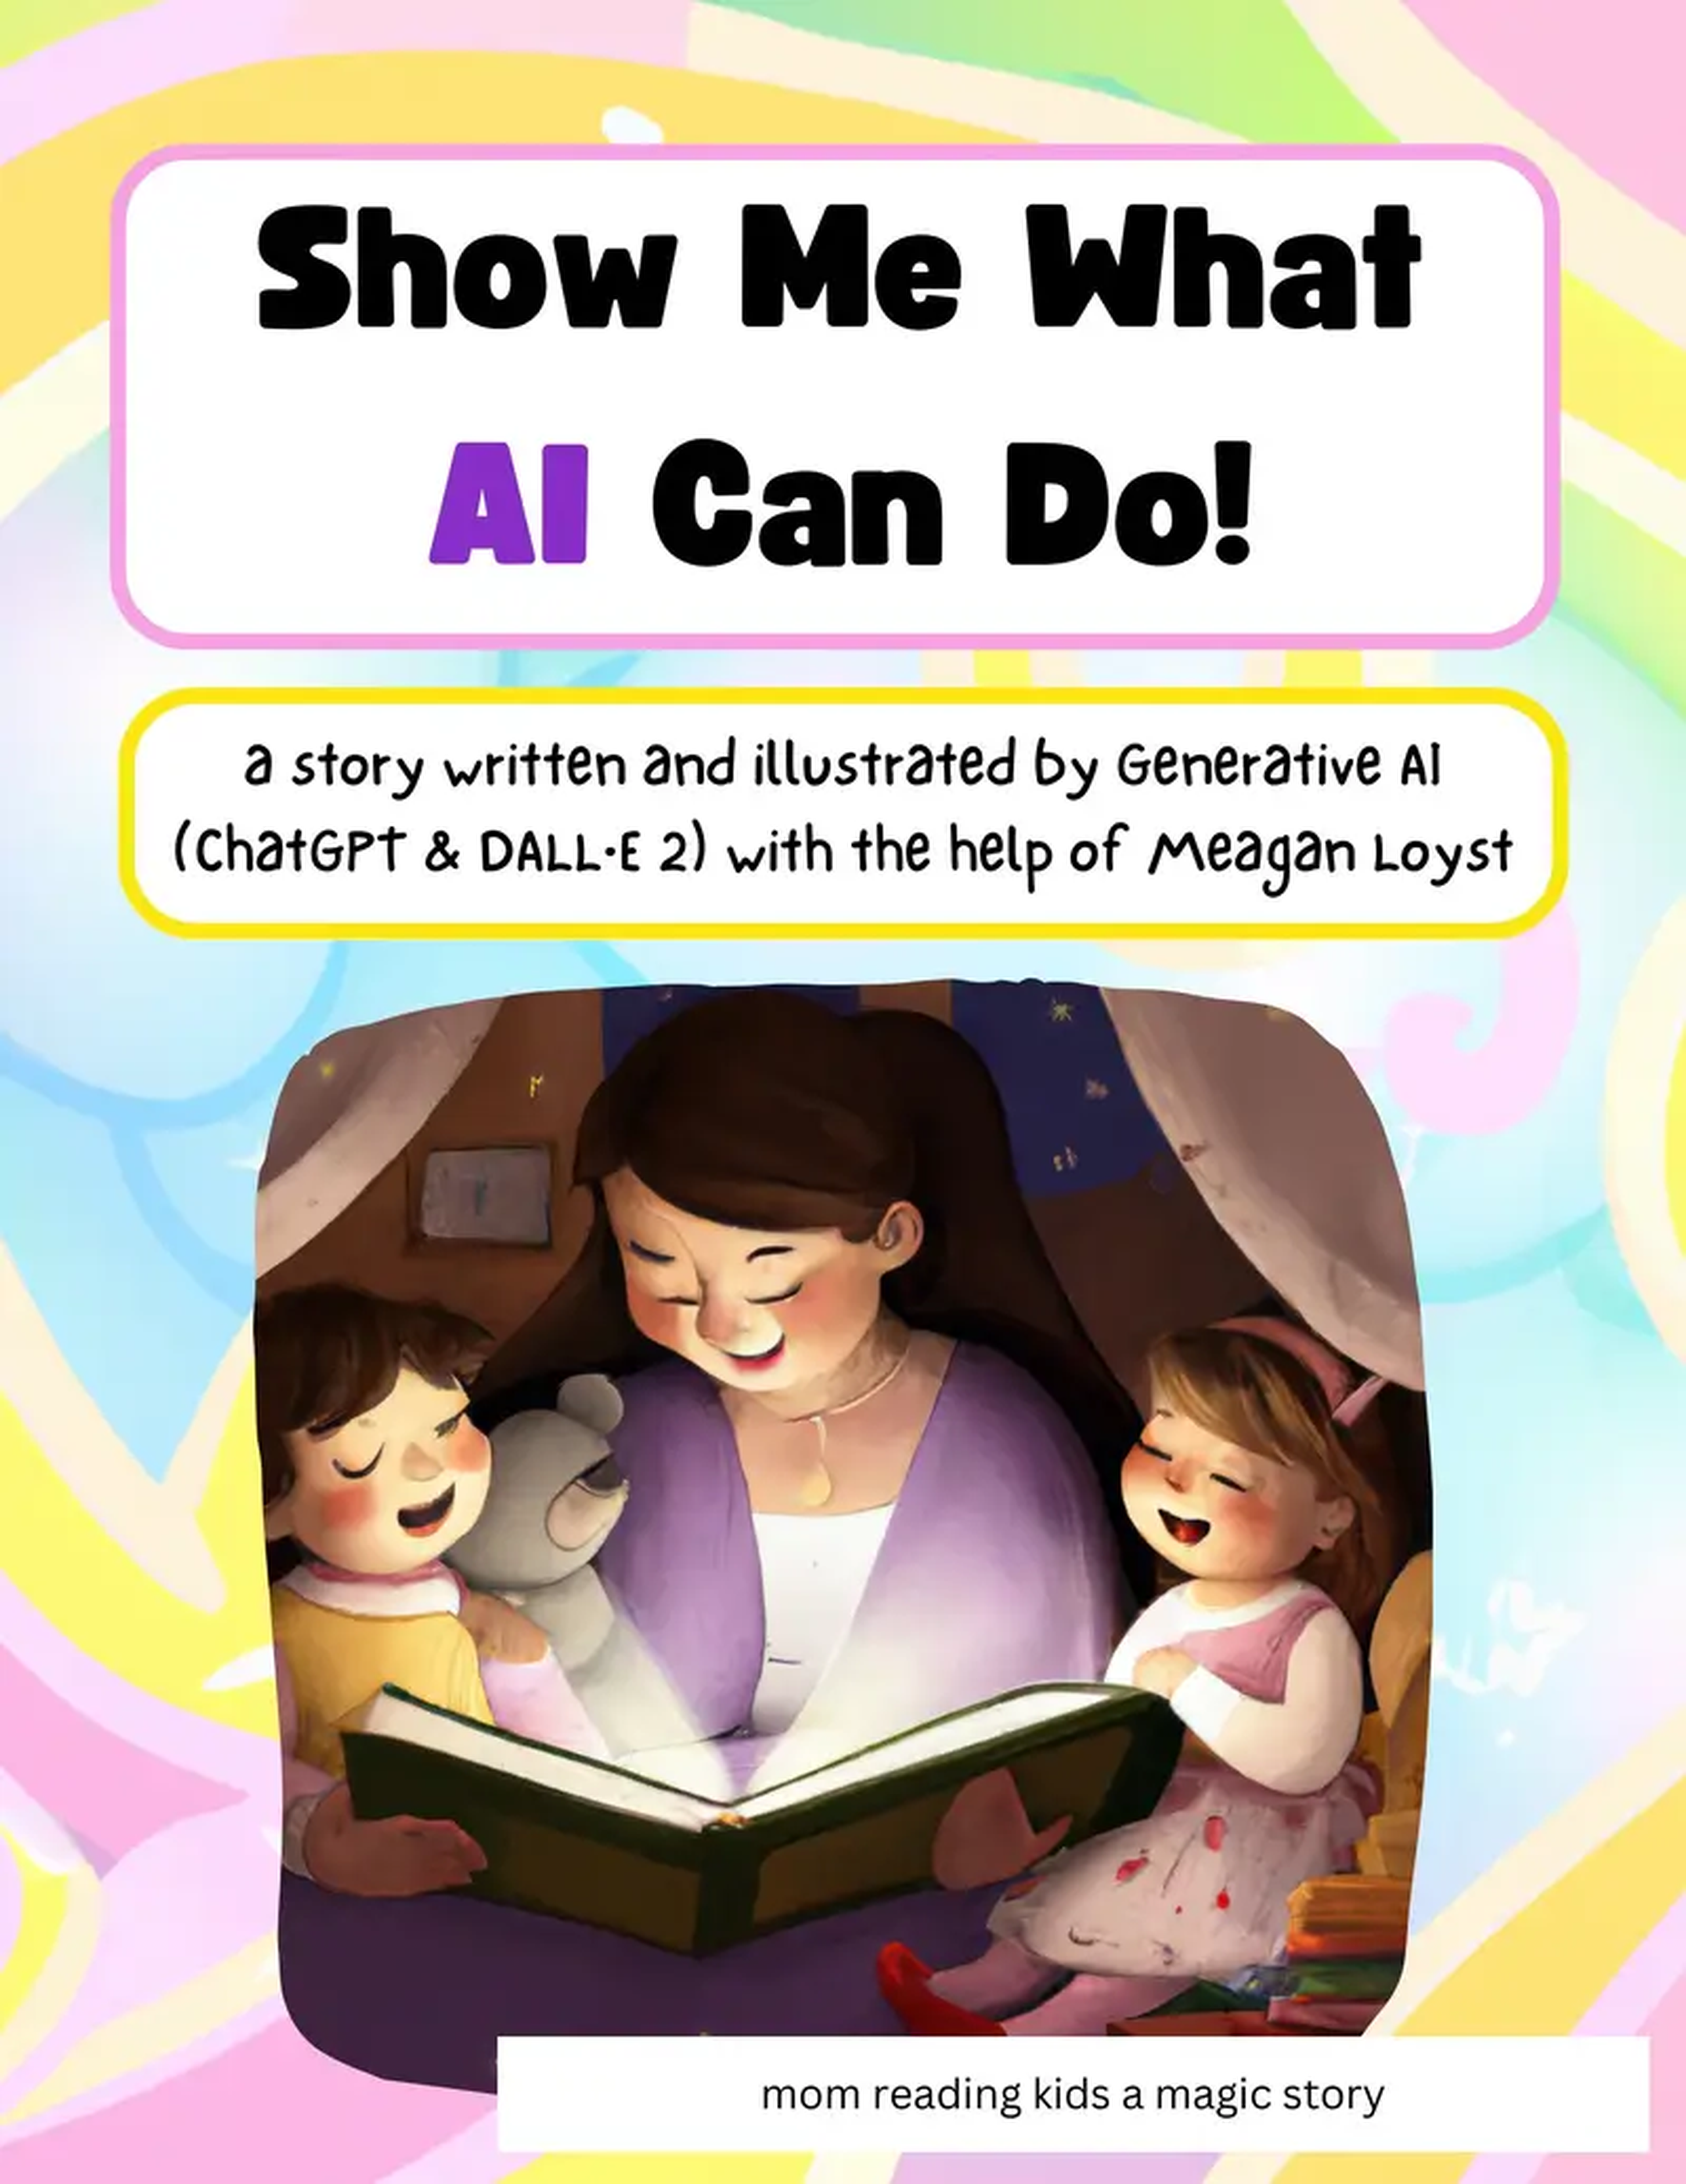 la portada de un libro infantil titulado 'Show me what AI can do' con una madre y 2 niños leyendo un cuento.